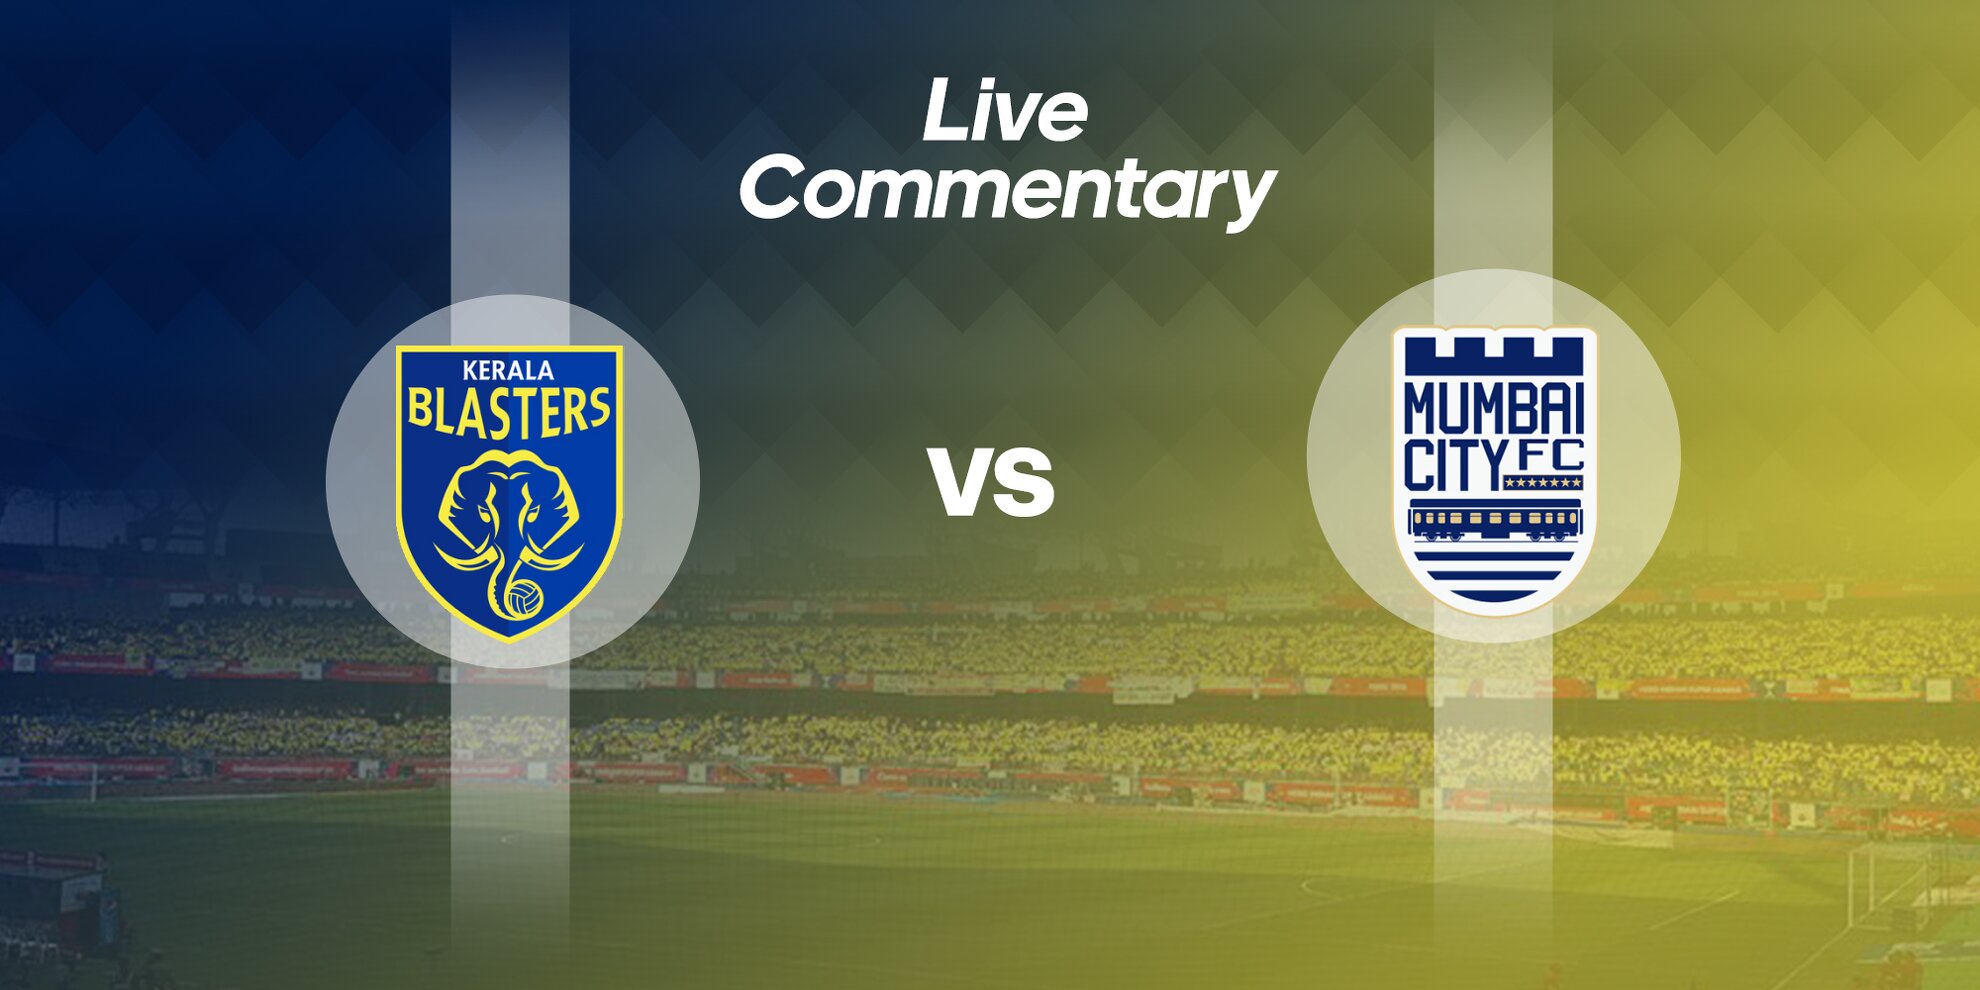 ISL 2019-20: Kerala Blasters vs Mumbai City Live Commentary